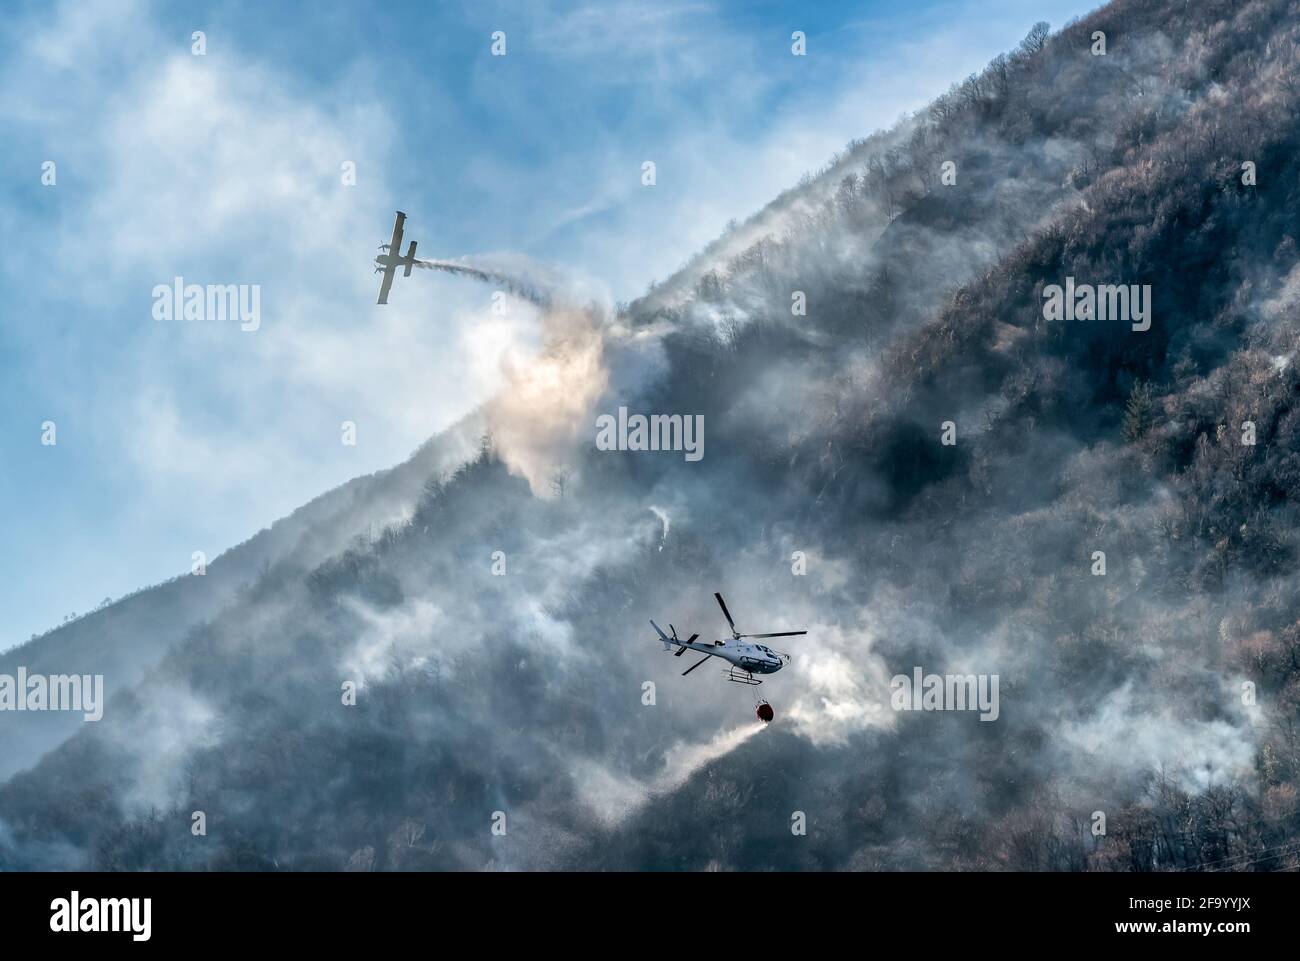 Avion de lutte contre l'incendie et hélicoptère qui larme l'eau pour combattre un incendie en montagne, au-dessus du lac Ghirla à Valganna, province de Varese, Italie Banque D'Images